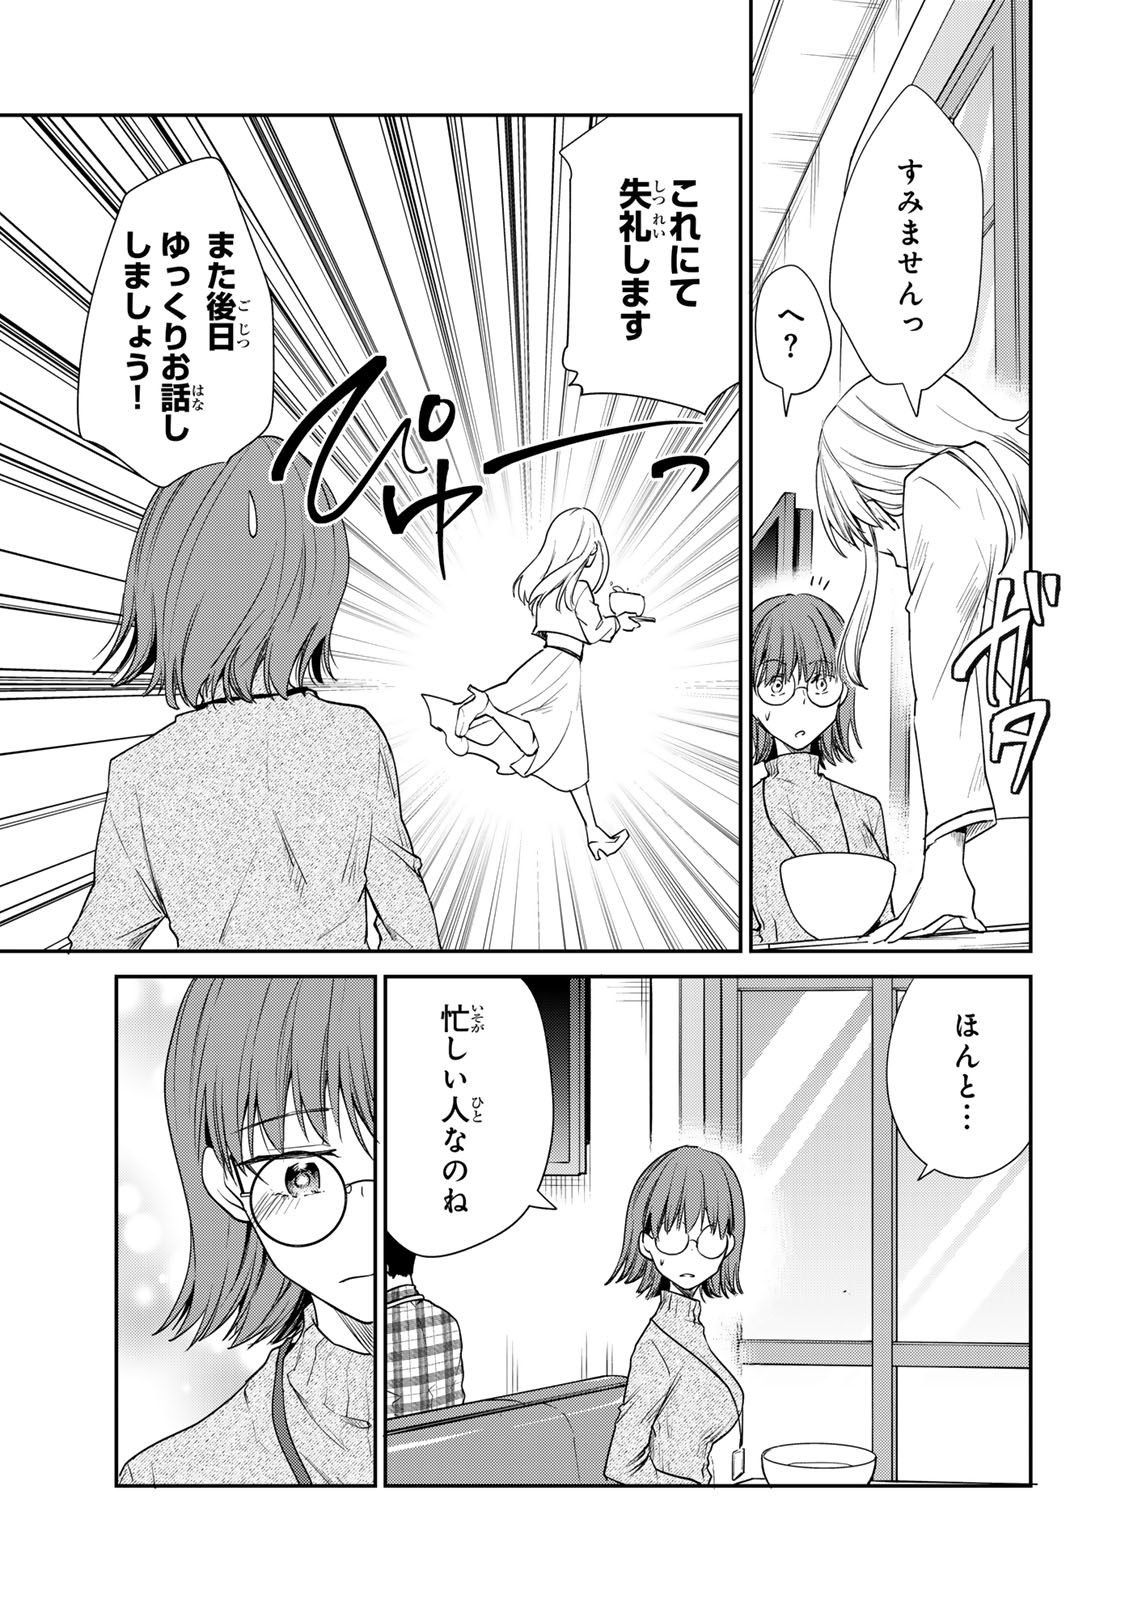 Kyou no Ohiru wa Nan desu ka? - Chapter 8 - Page 19